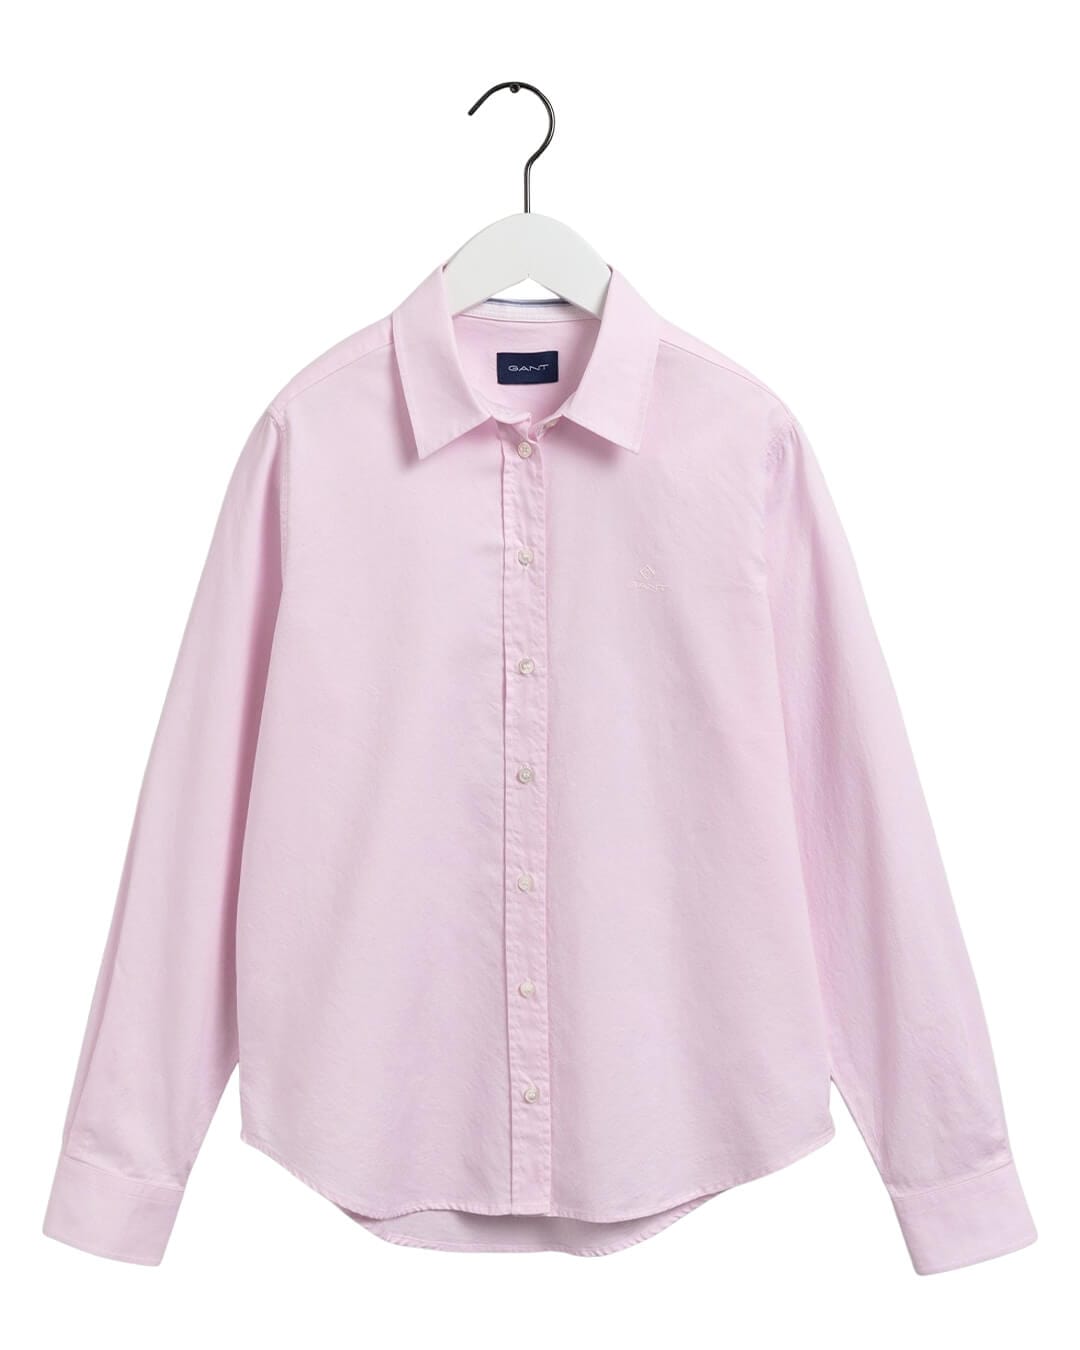 Gant Shirts Gant Pink Regular Oxford Shirt